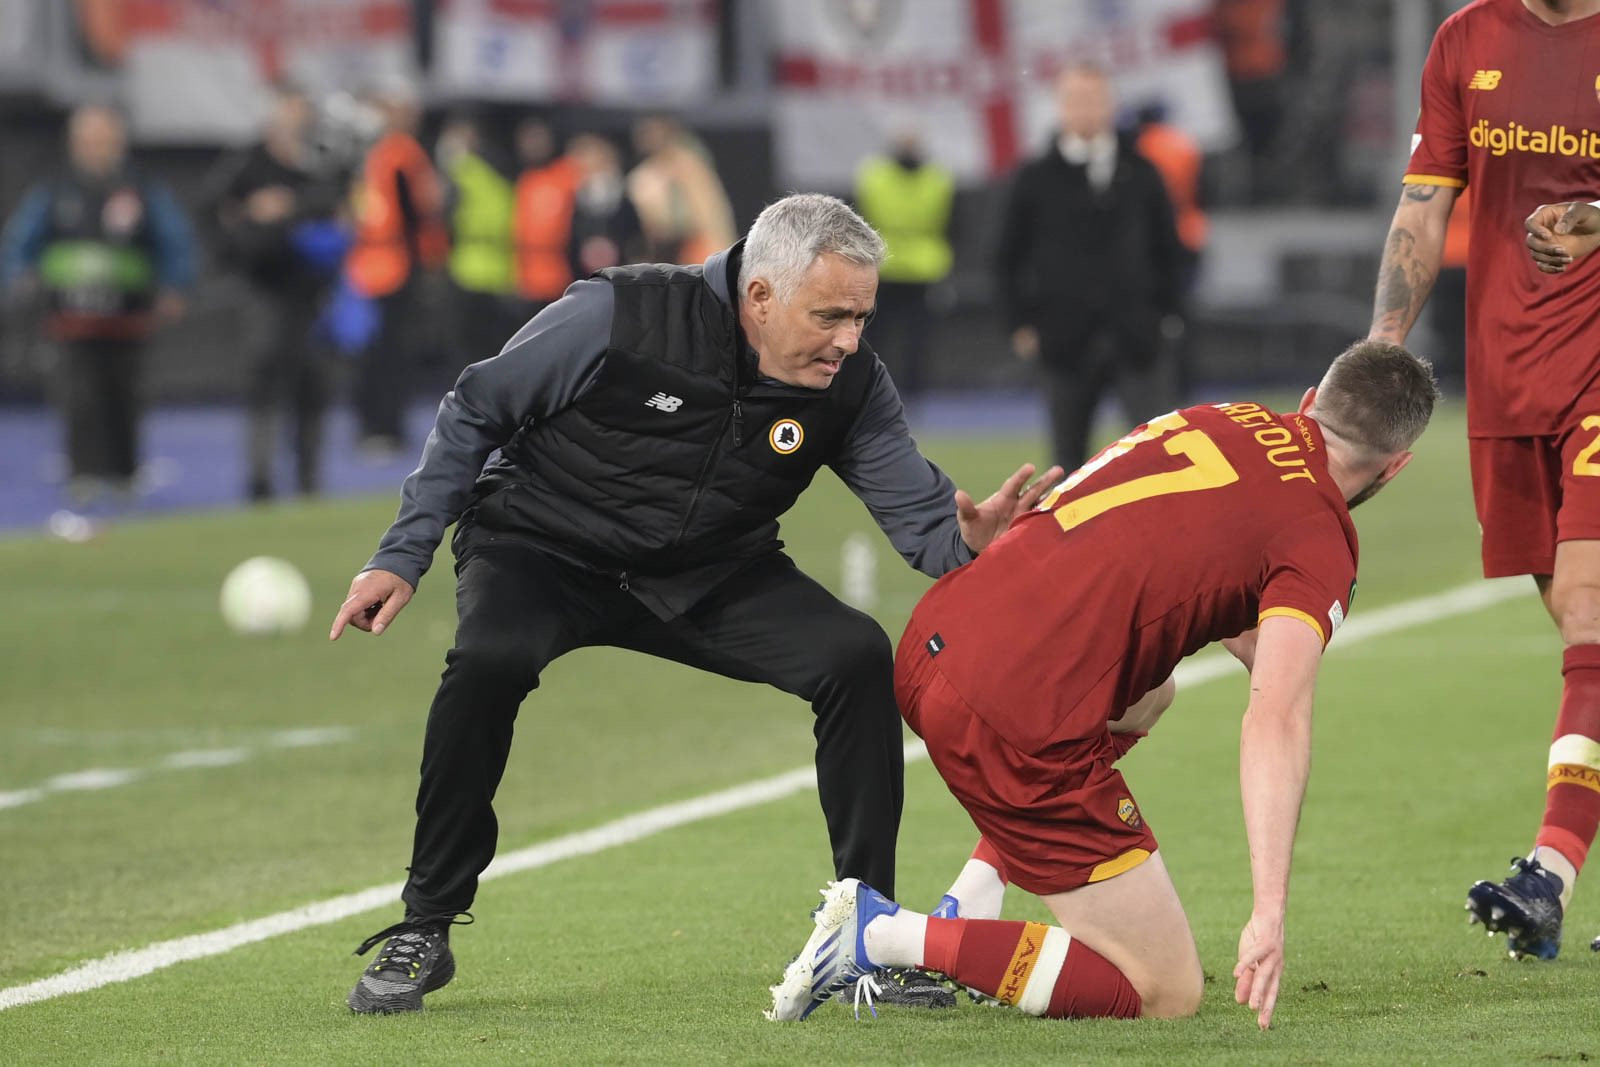 Với việc Roma giành chiến thắng trước Leicester, Mourinho trở thành nhà cầm quân đầu tiên trong lịch sử giành quyền vào chung kết giải đấu cúp châu Âu với 4 đội bóng khác nhau